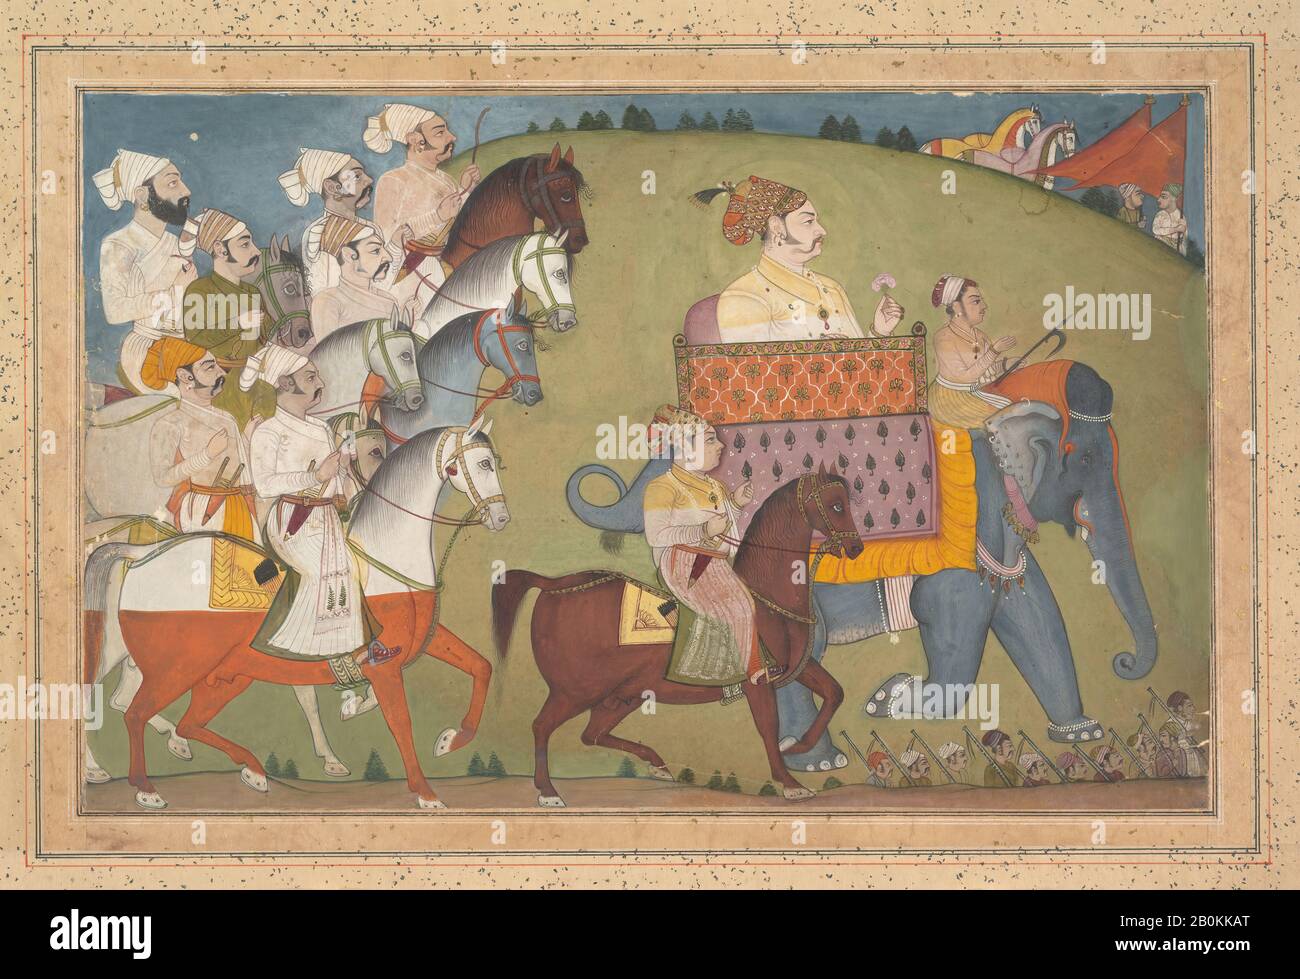 Maharaja Raj Singh wird Nihal Chand zugeschrieben und in Einer Prozession mit Mitgliedern seines Gerichtshofs, Indien (Rajasthan, Junia), Dem Nihal Chand zugeschrieben, Ca. 1700, Indien (Rajasthan, Junia), Tinte, opakes Aquarell und Gold auf Papier, Bild: 8 1/4 x 12 3/4 Zoll. (21 x 32,4 cm), Gemälde Stockfoto